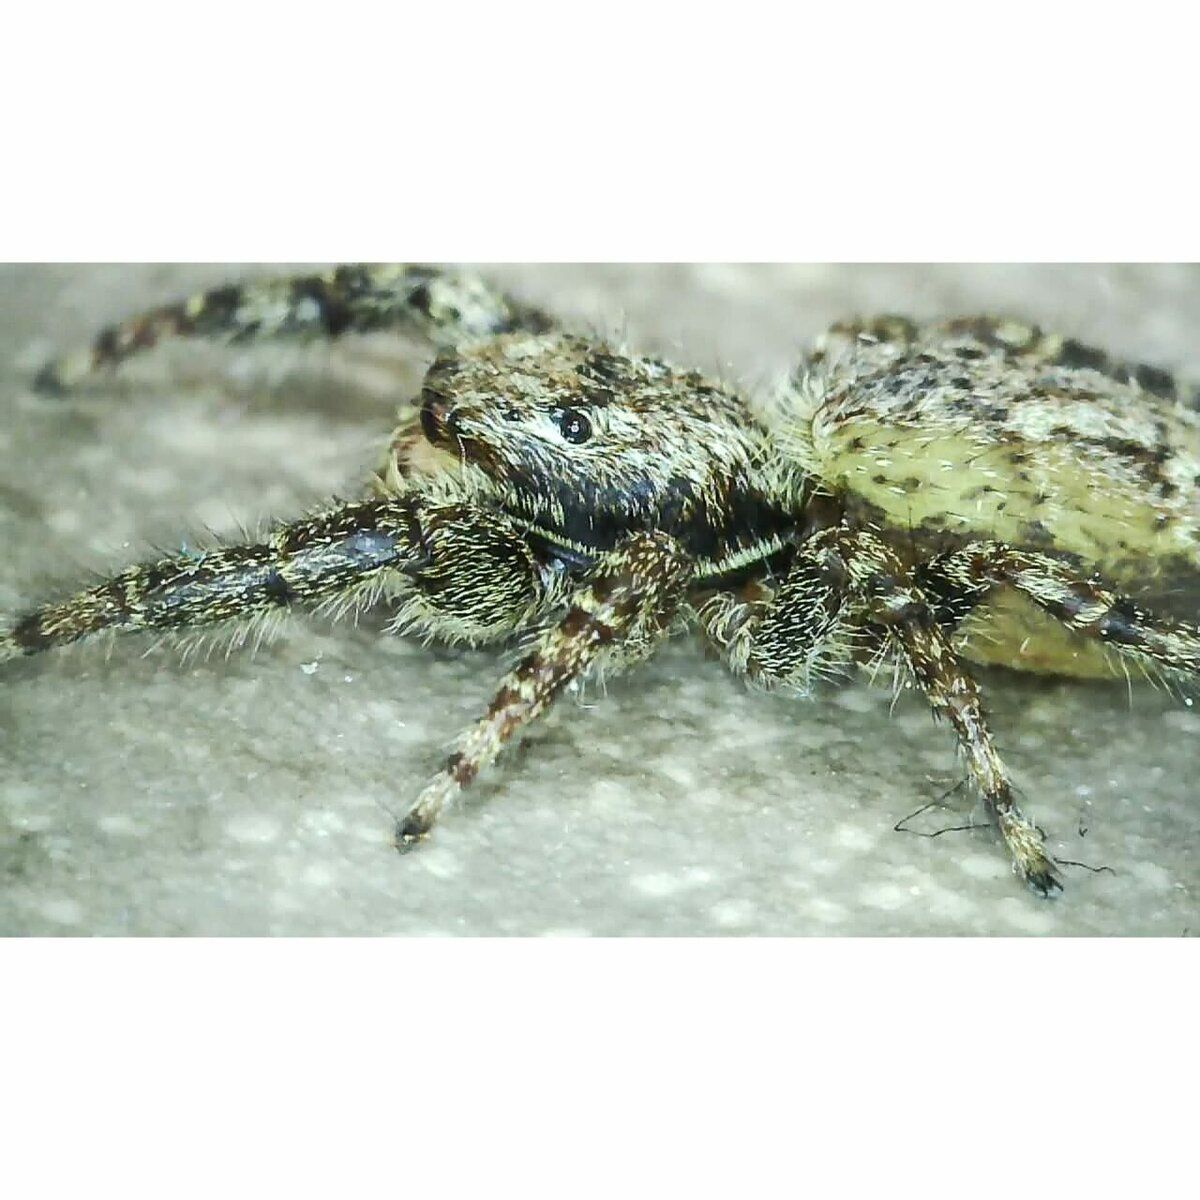 Spinne zu Gast (ca. 1 Cent Stück groß)